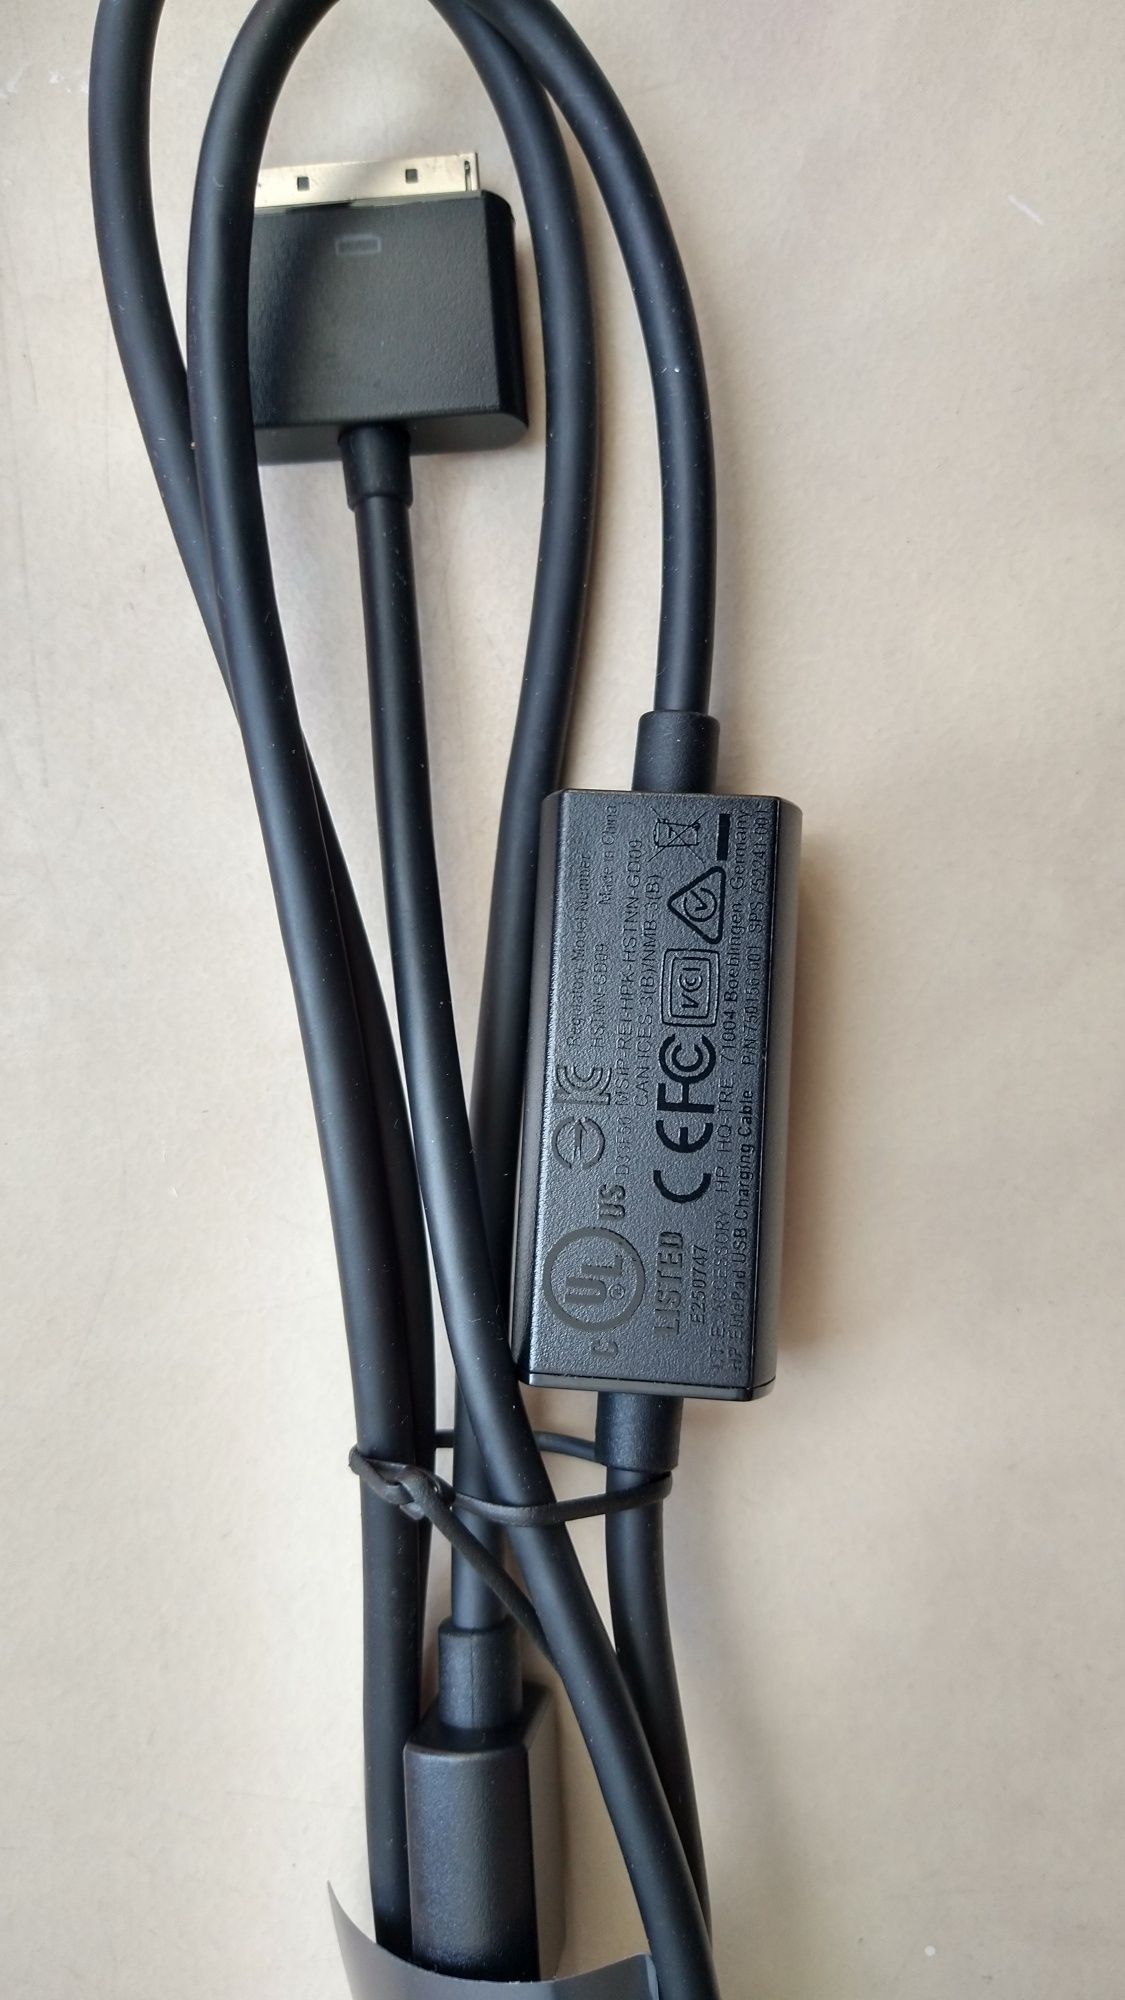 Kabel USB HP Elite Pad oryginał.